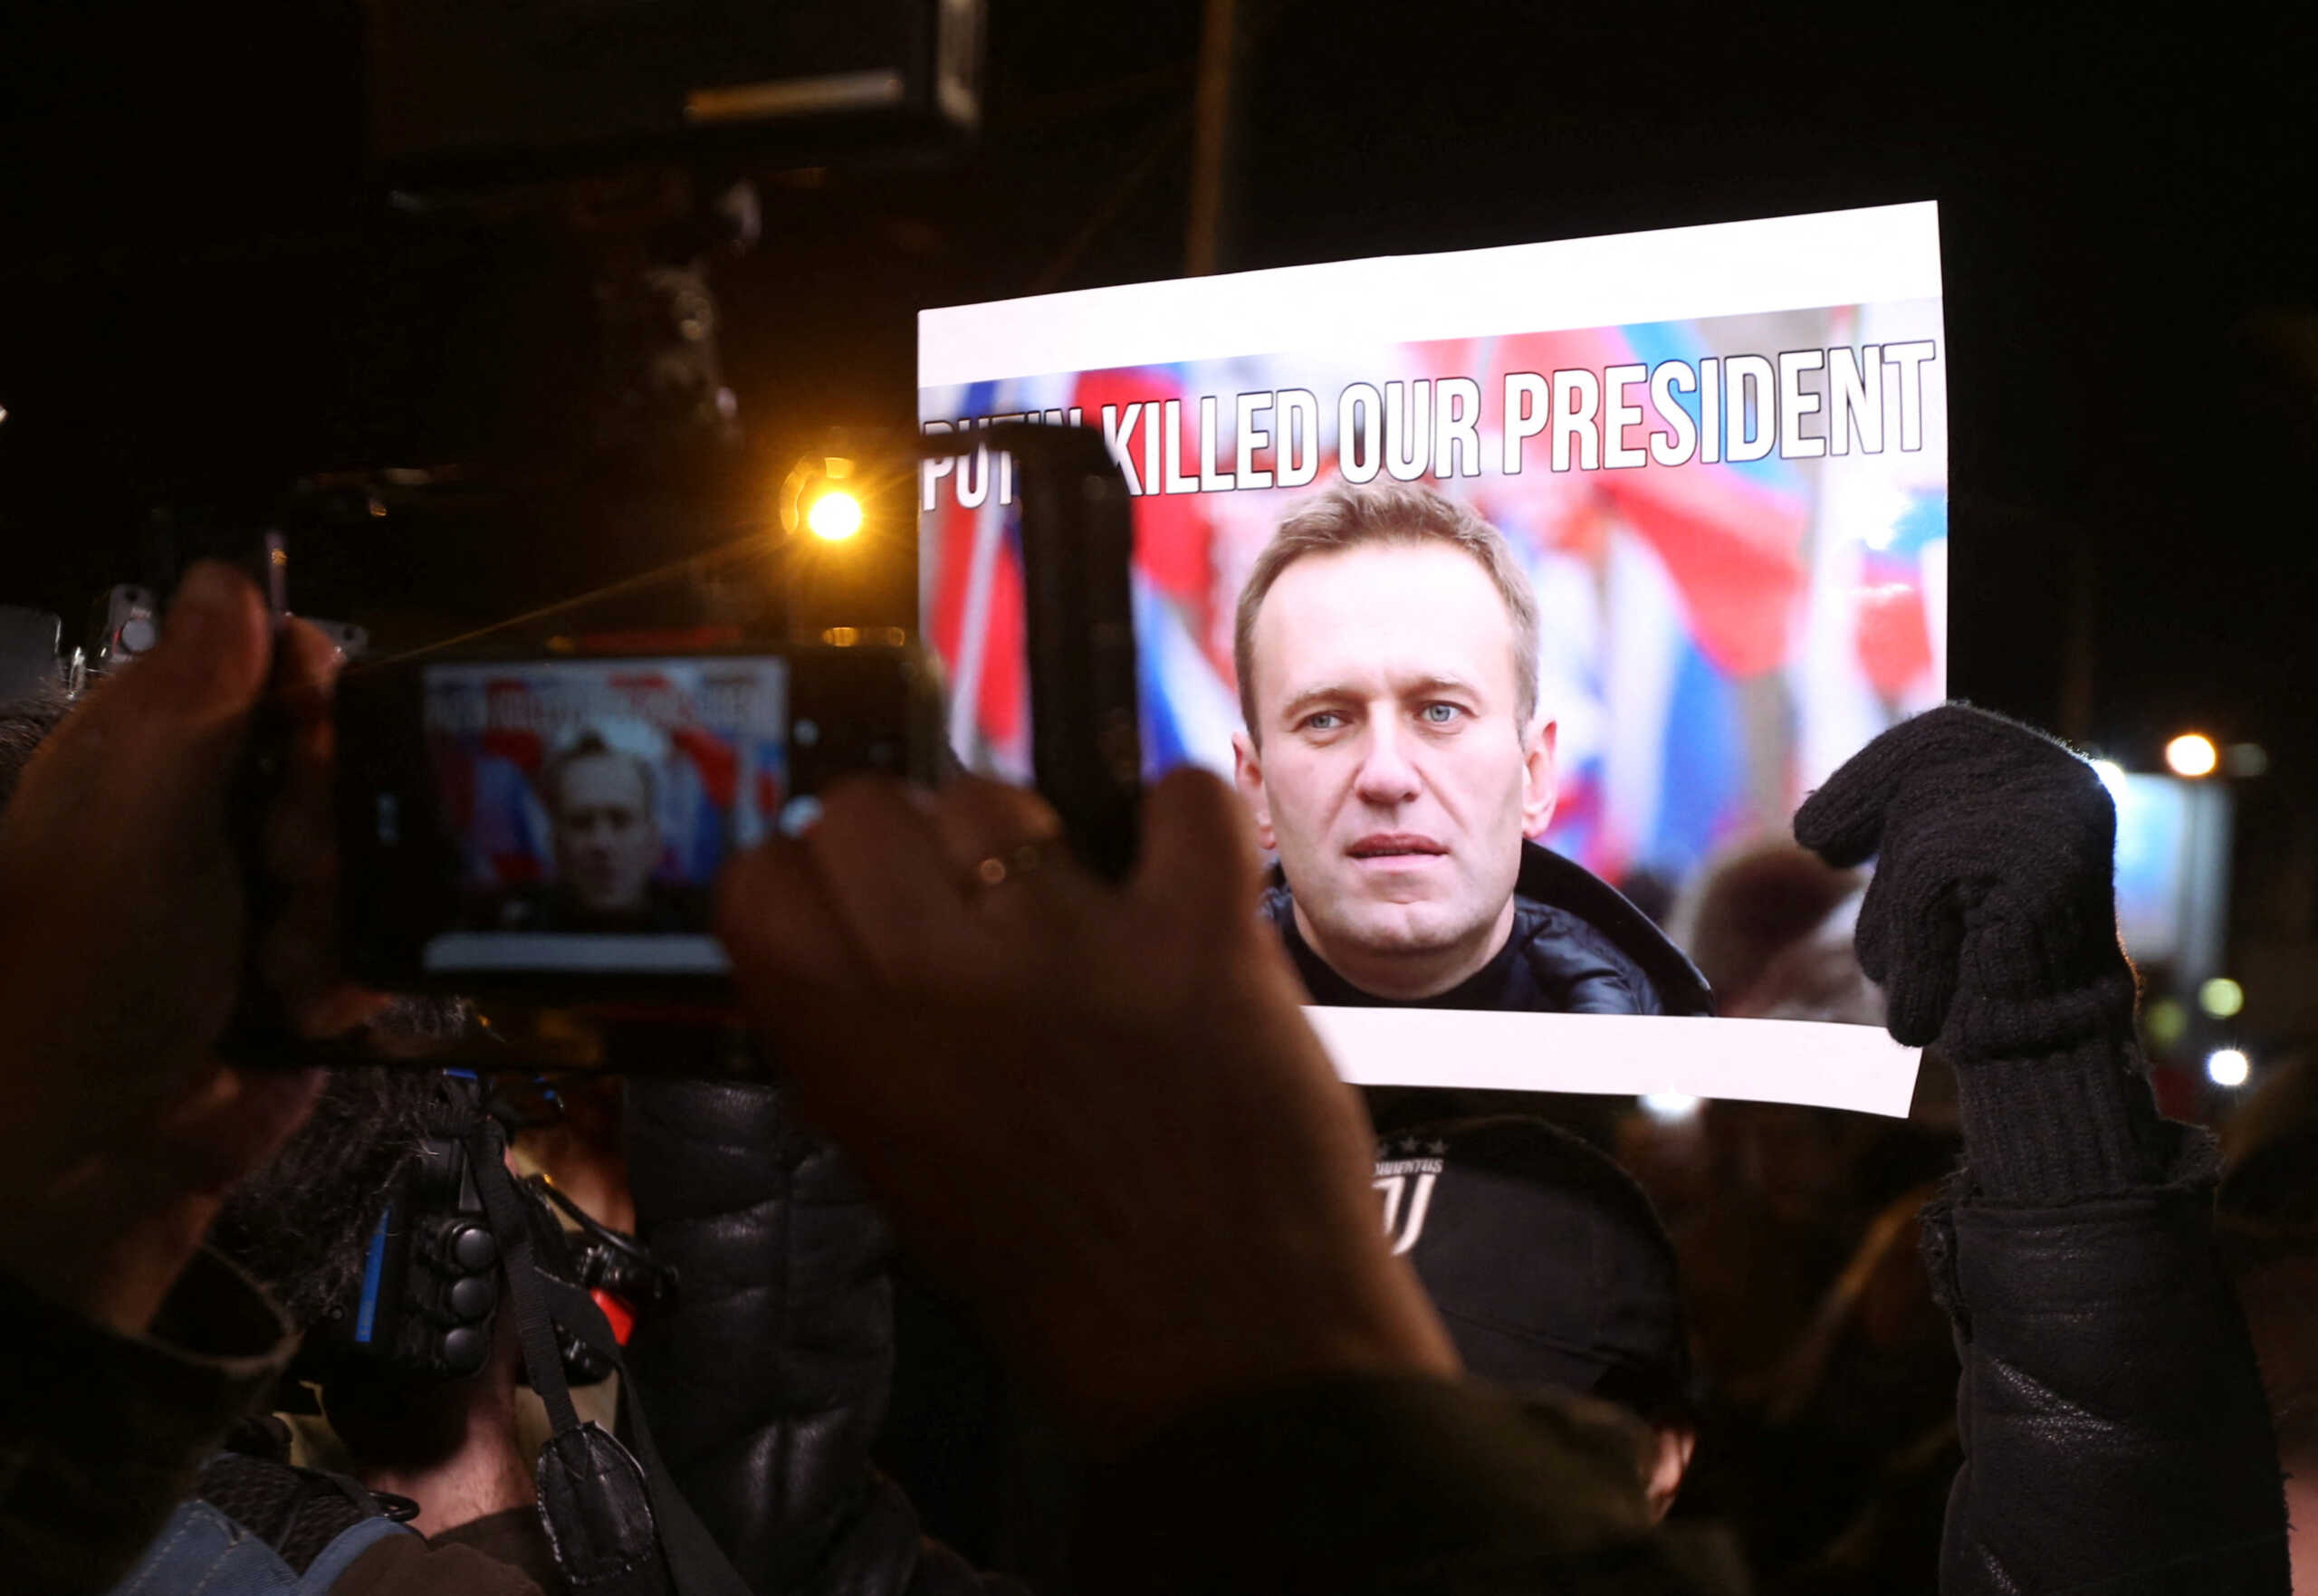 Αλεξέι Ναβάλνι: Η Δύση ζητά από την Ρωσία να λογοδοτήσει – Διαδηλώσεις σε ΗΠΑ και Ευρώπη